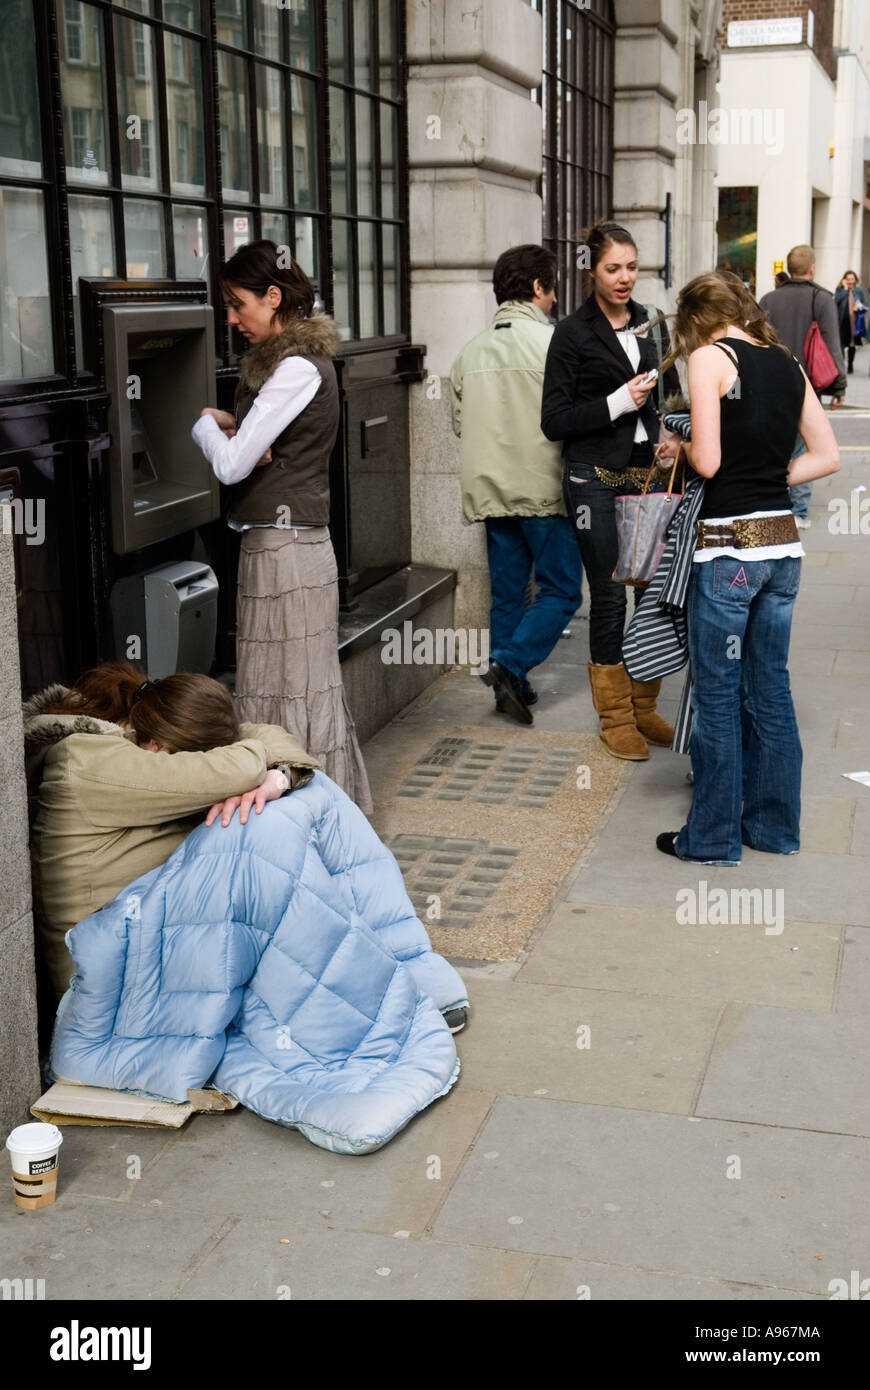 Les classes sociales pauvres riches contraste UK 2000s mendiant assis endormi à côté d'un point de trésorerie. Chelsea King Road, London SW3, en Angleterre. HOMER SYKES Banque D'Images